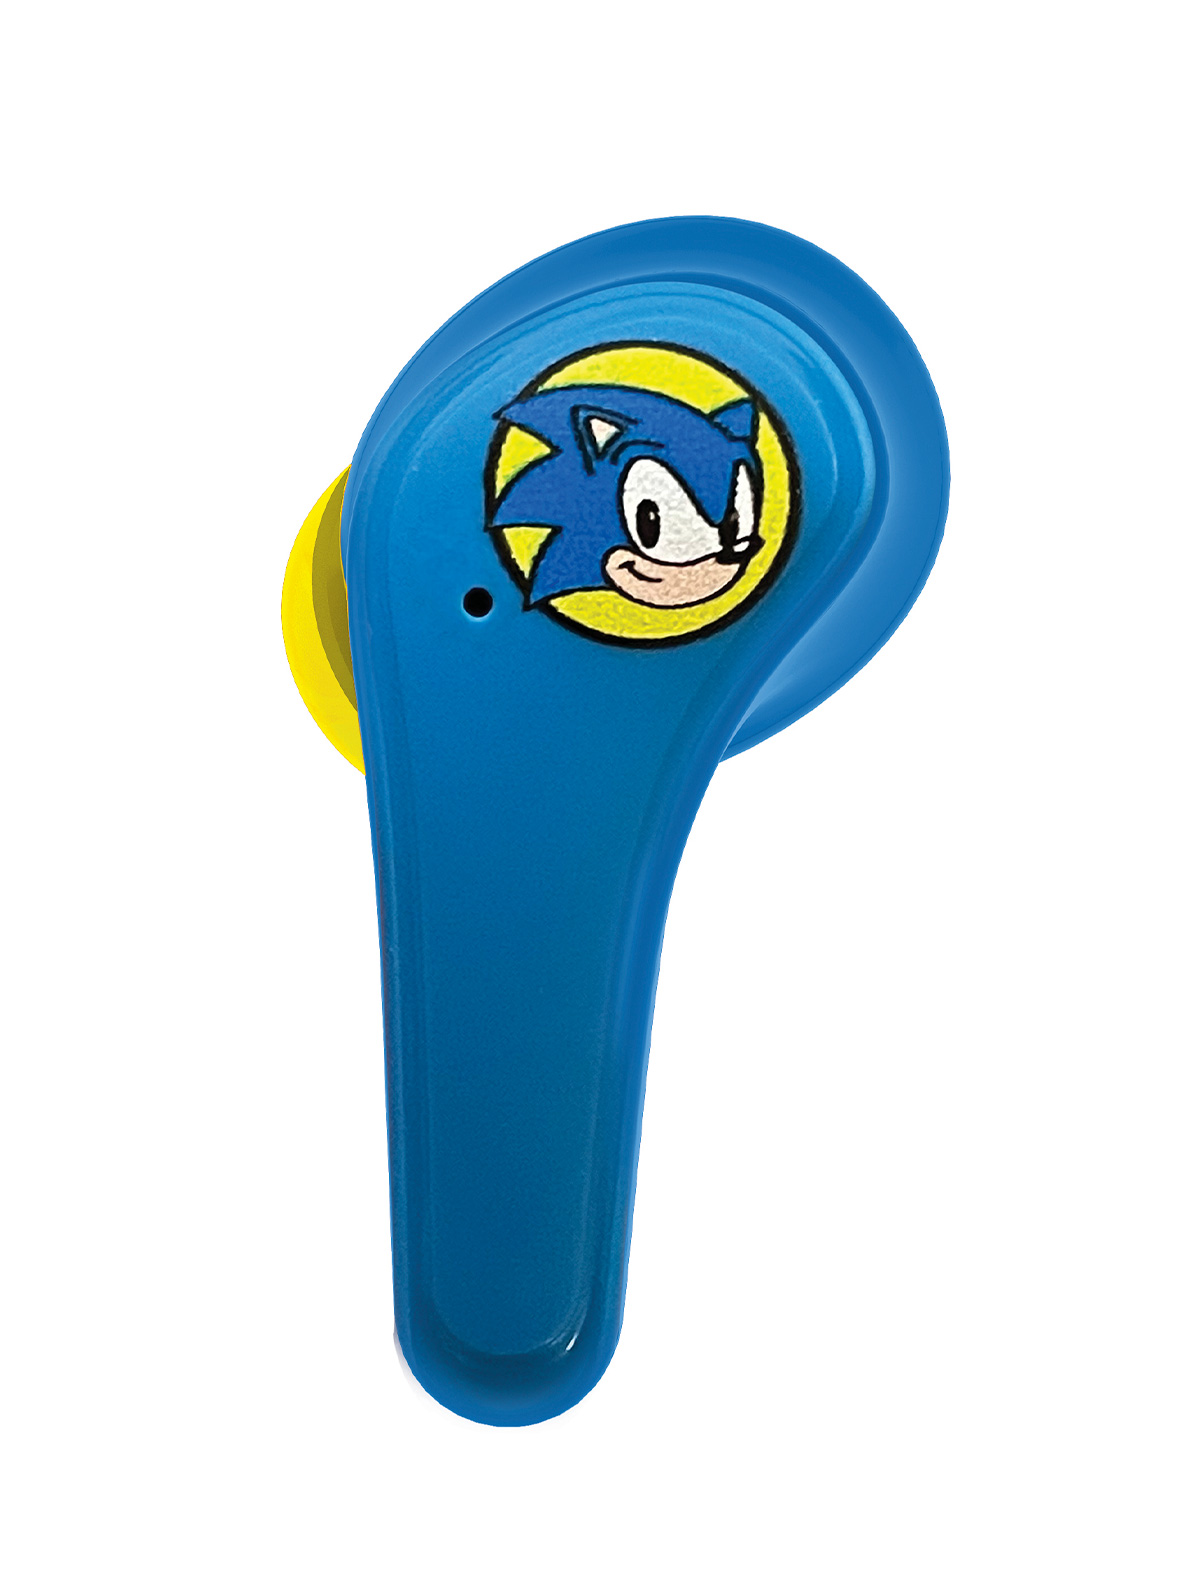 Sonic наушники беспроводные